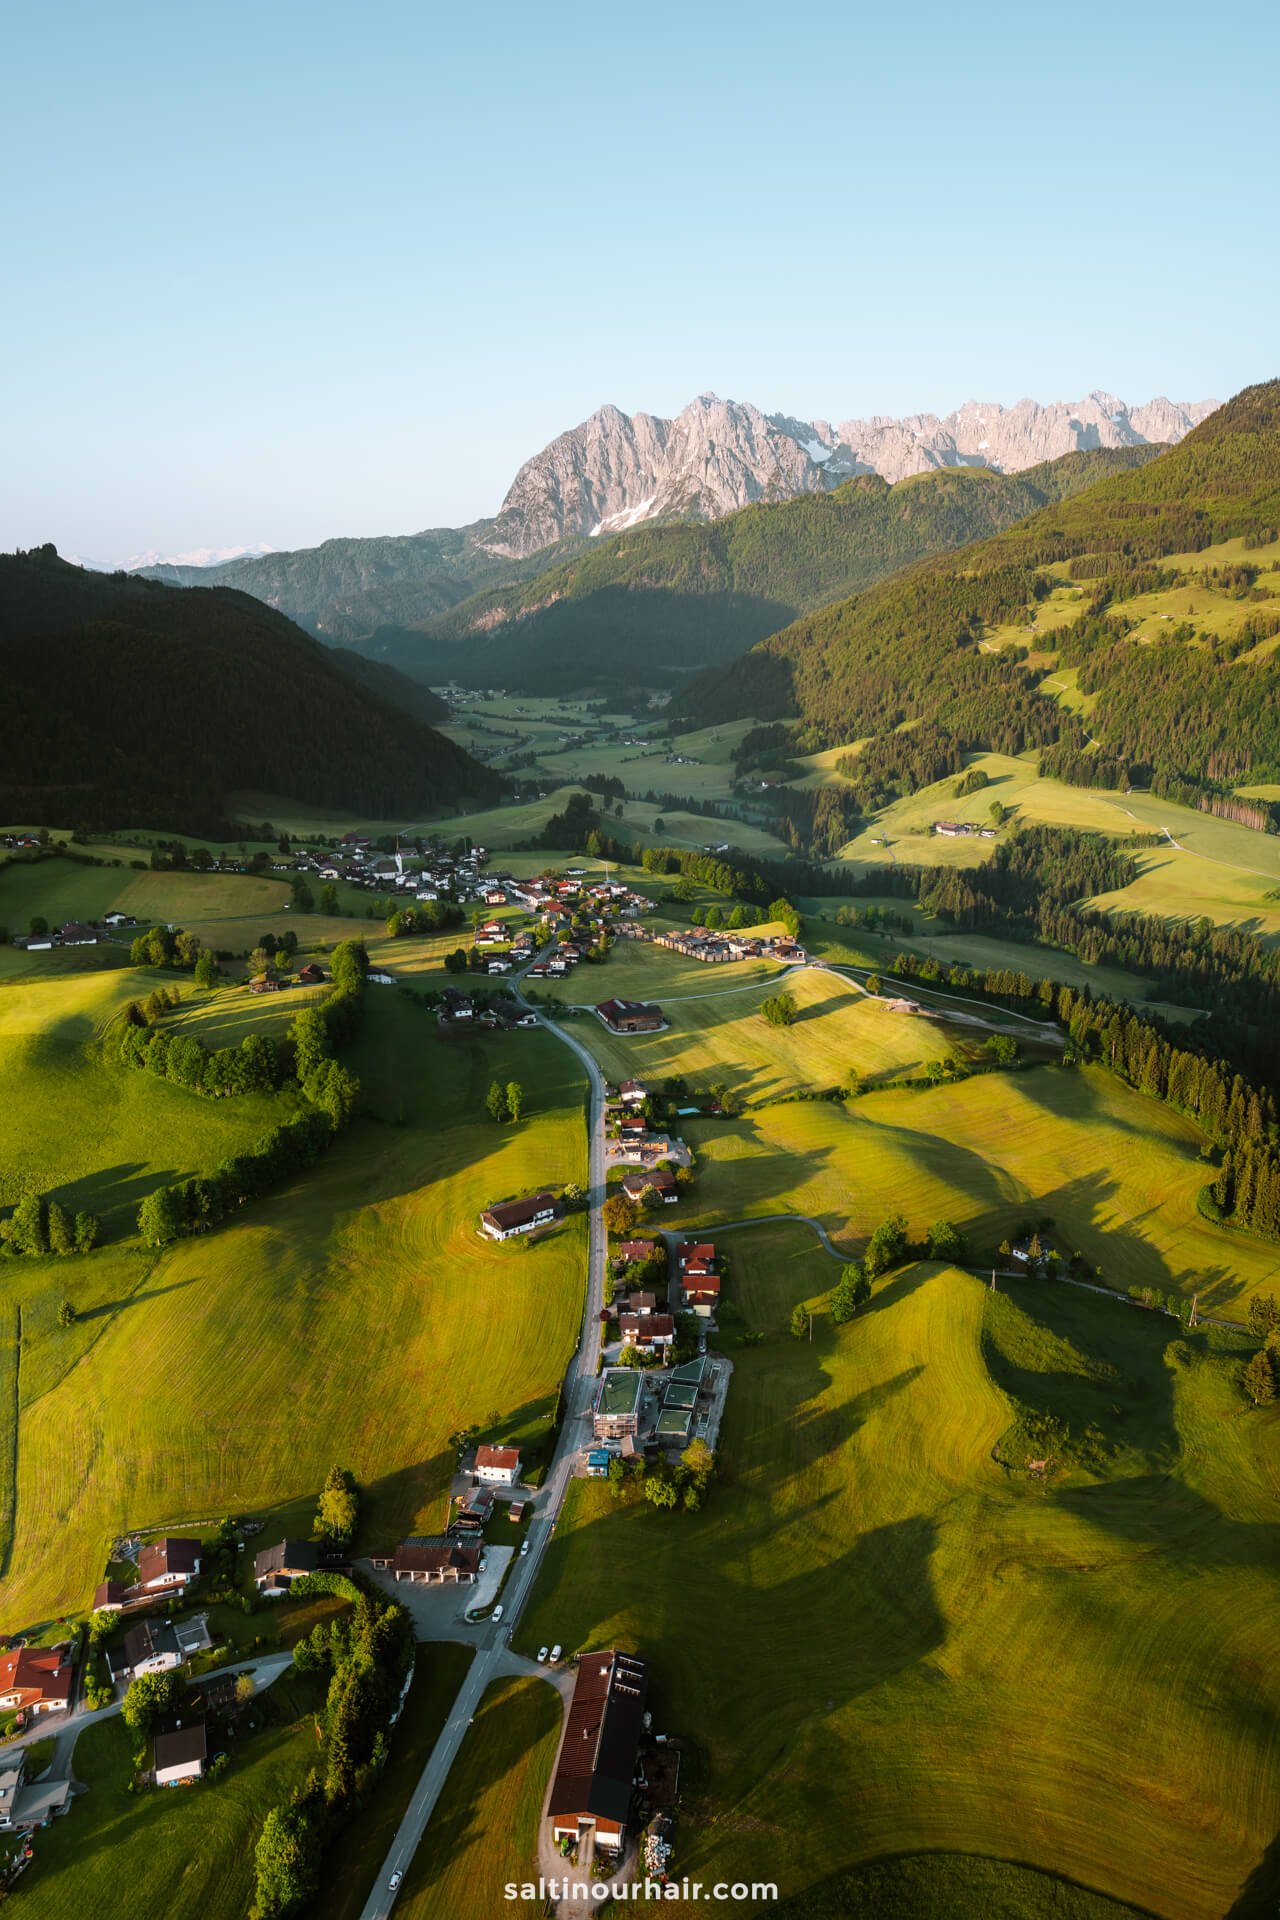 leukste dingen om te doen in Tirol Oostenrijk Luchtballon bekijken